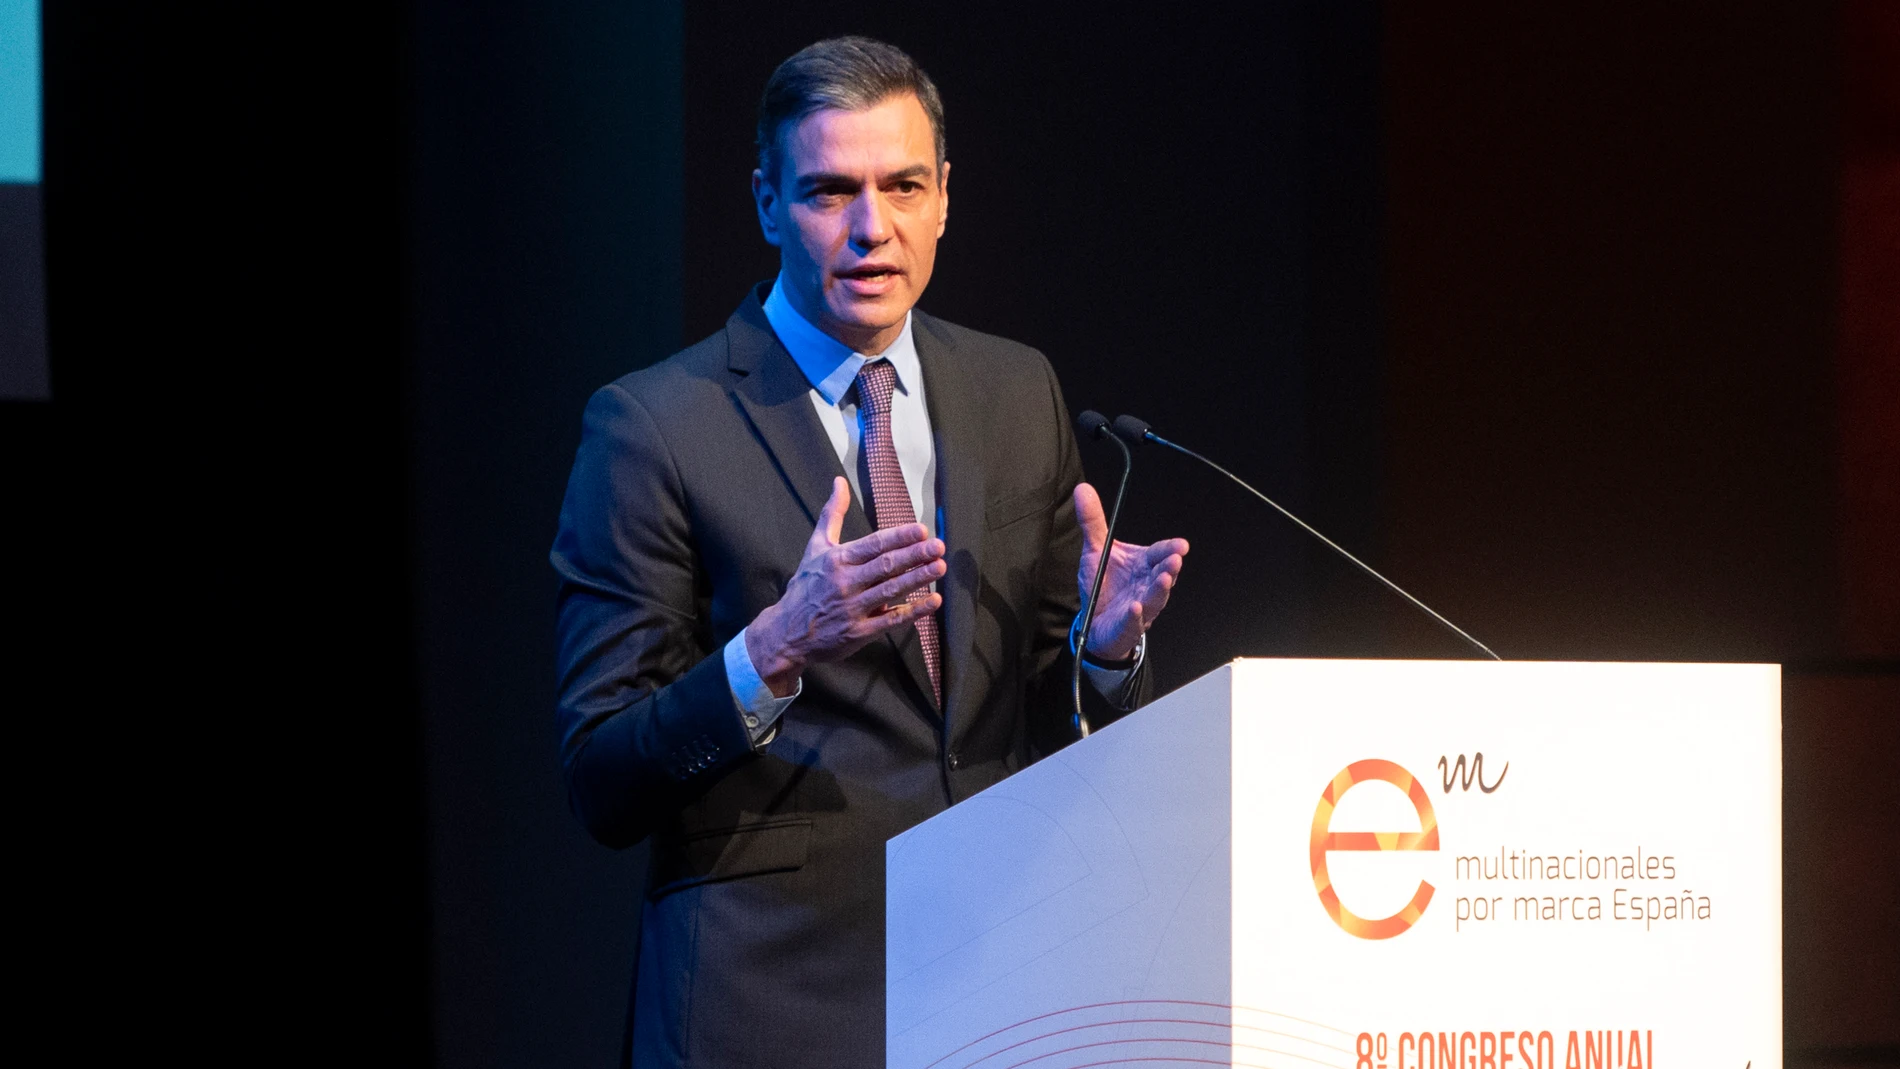 El presidente del Gobierno, Pedro Sánchez, interviene en el Congreso Anual de Multinacionales por marca España